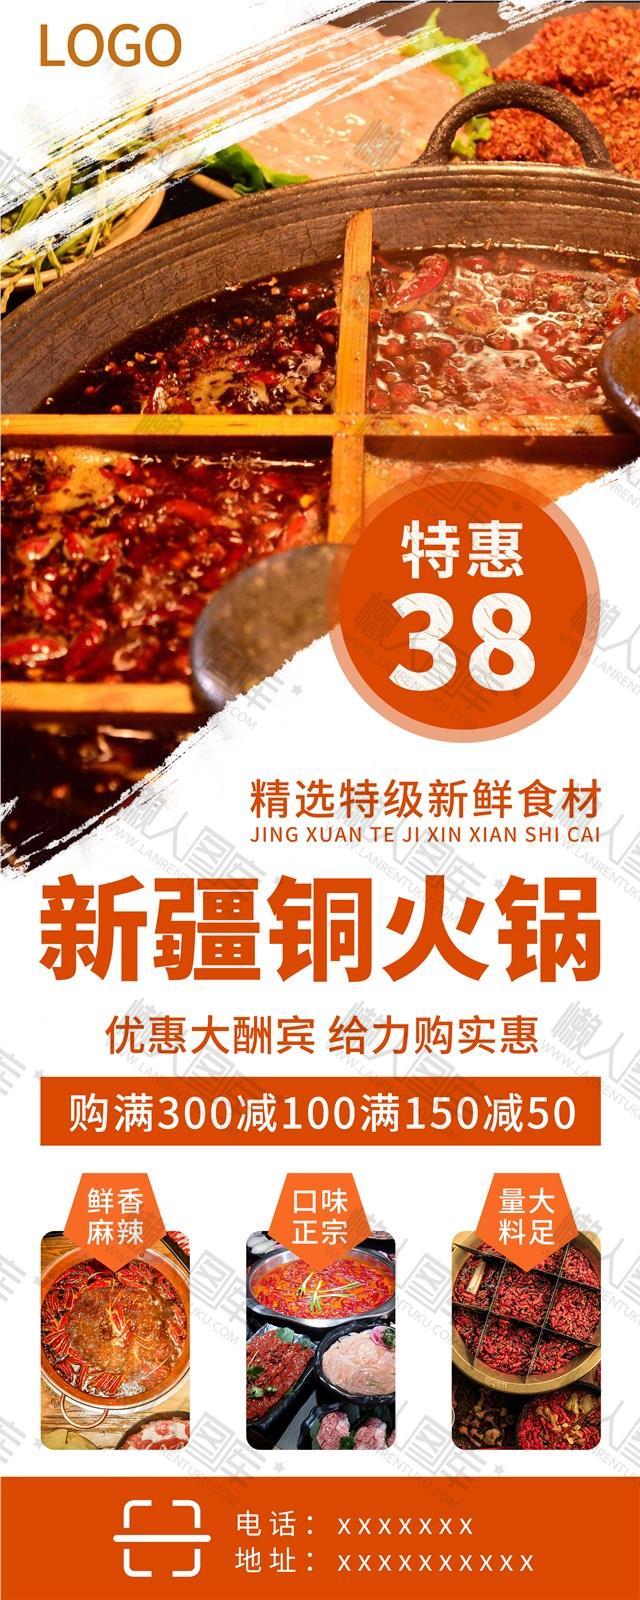 冬季火锅店促销宣传海报